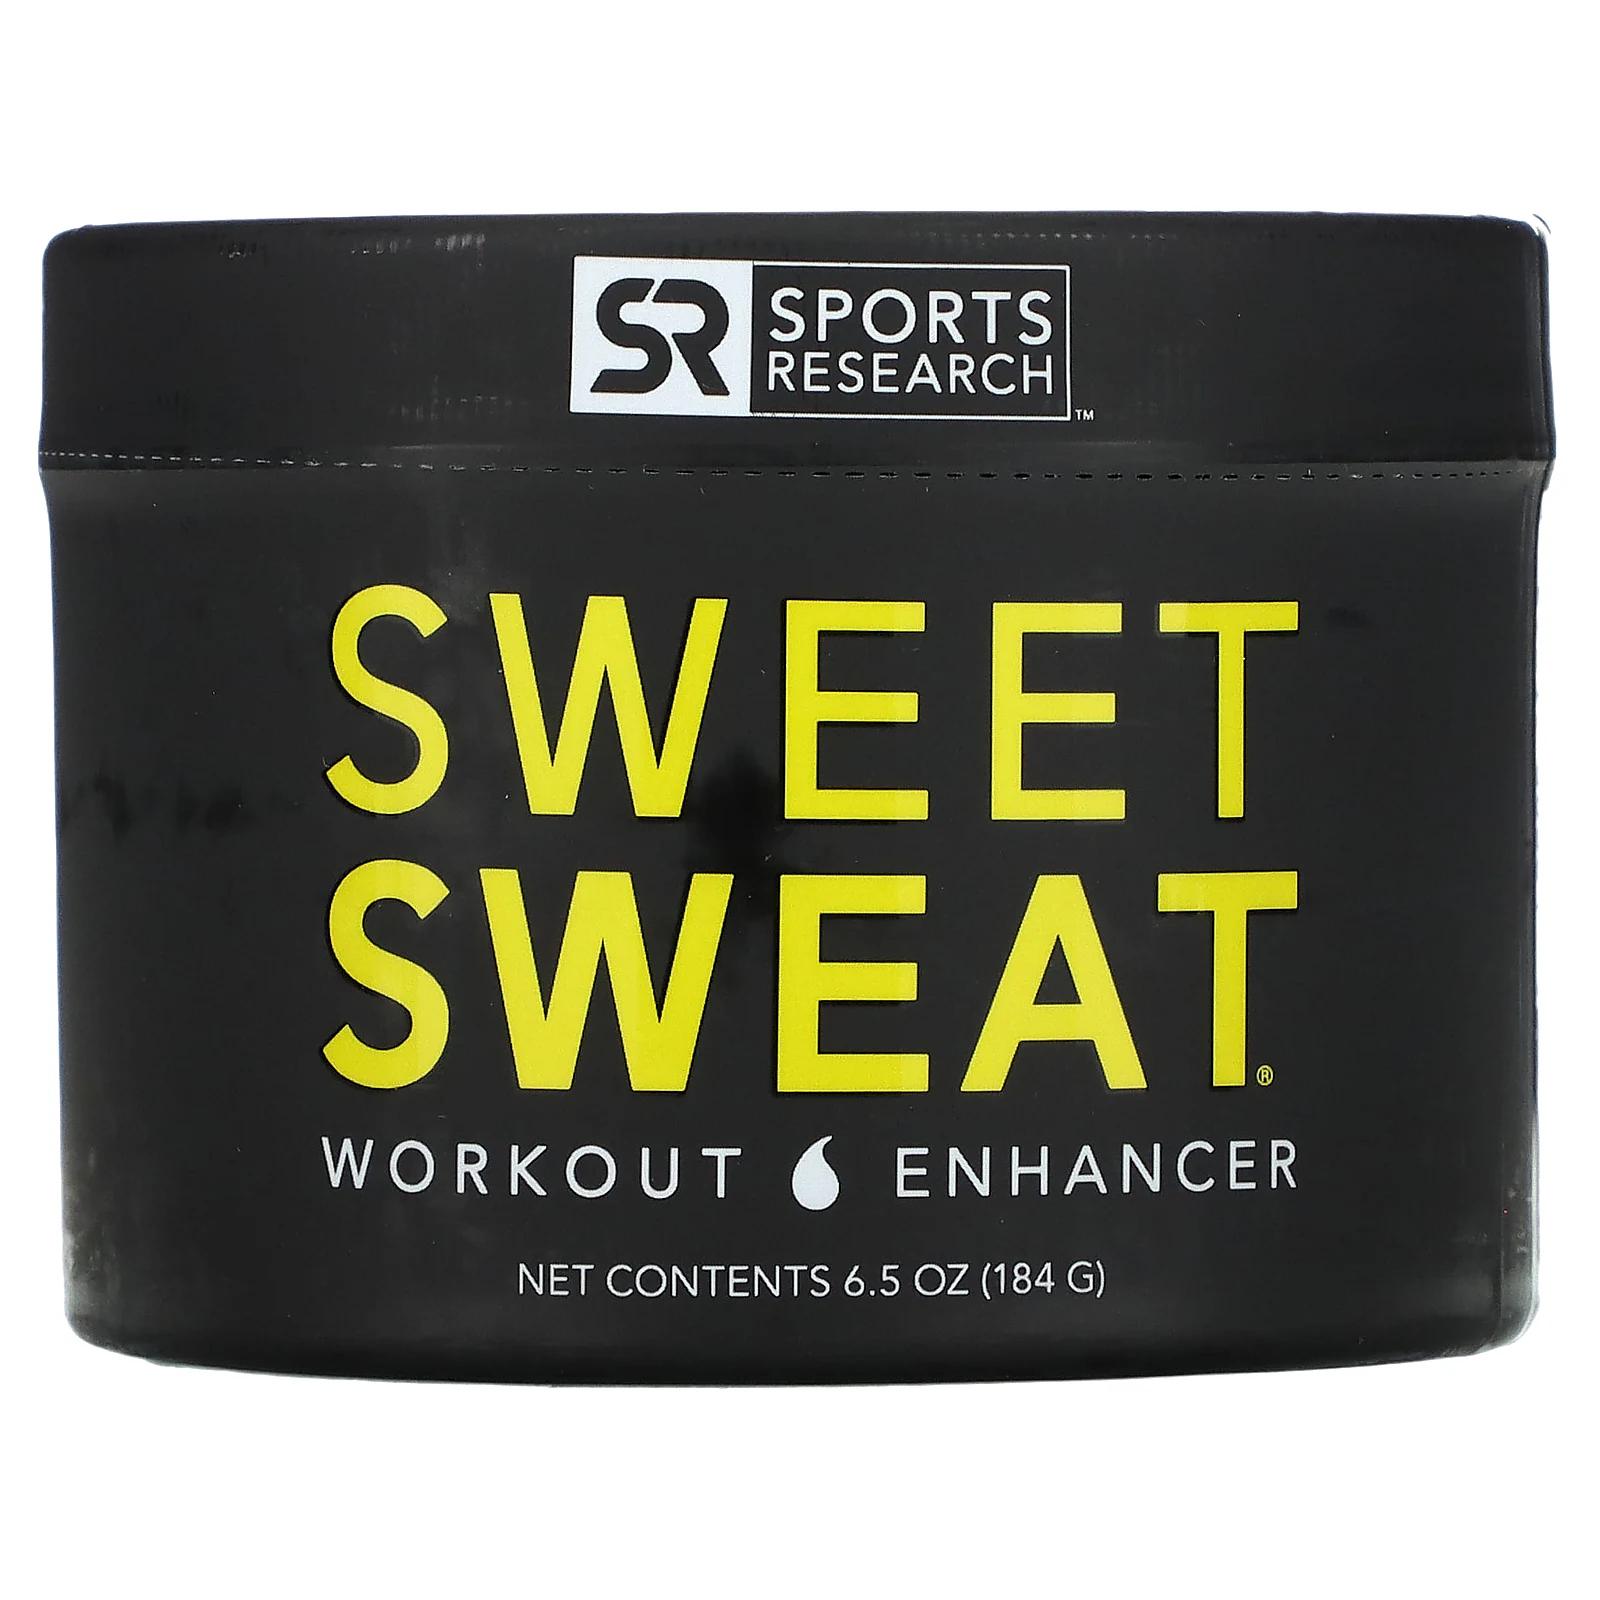 Sports Research Sweet Sweat добавка для повышения эффективности тренировок 184 г (6,5 унции) sports research кабельная скакалка черная 1 шт